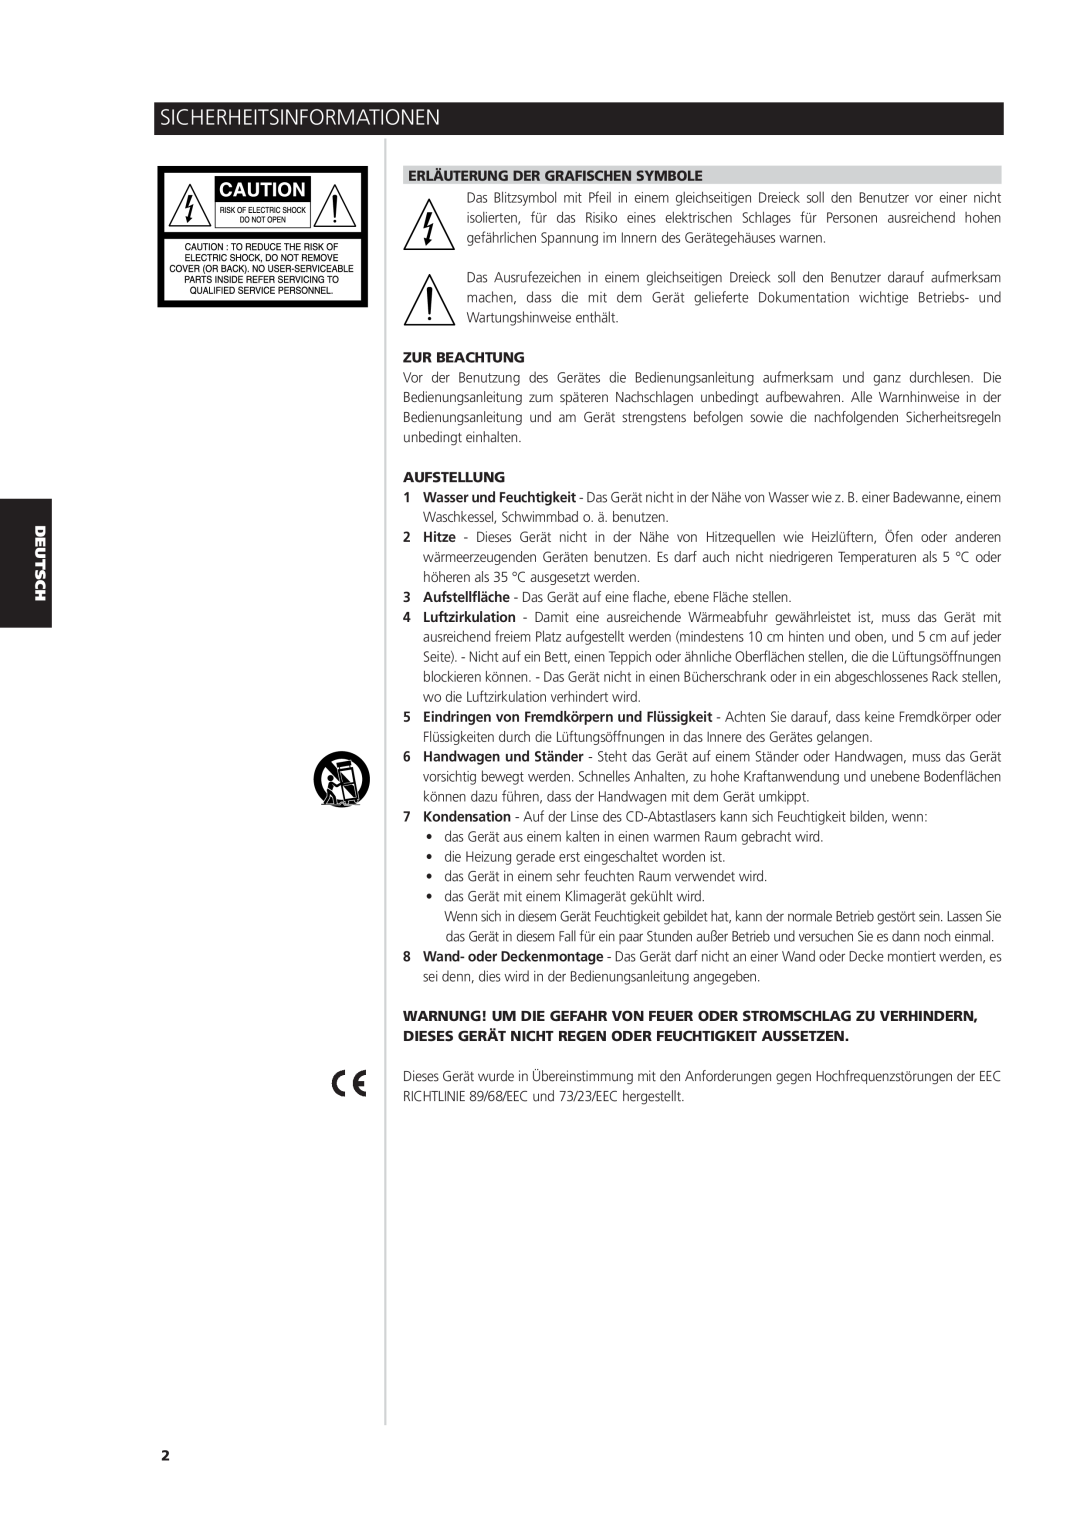 NAD S170iAV owner manual Sicherheitsinformationen, Erläuterung Der Grafischen Symbole, Zur Beachtung, Aufstellung 